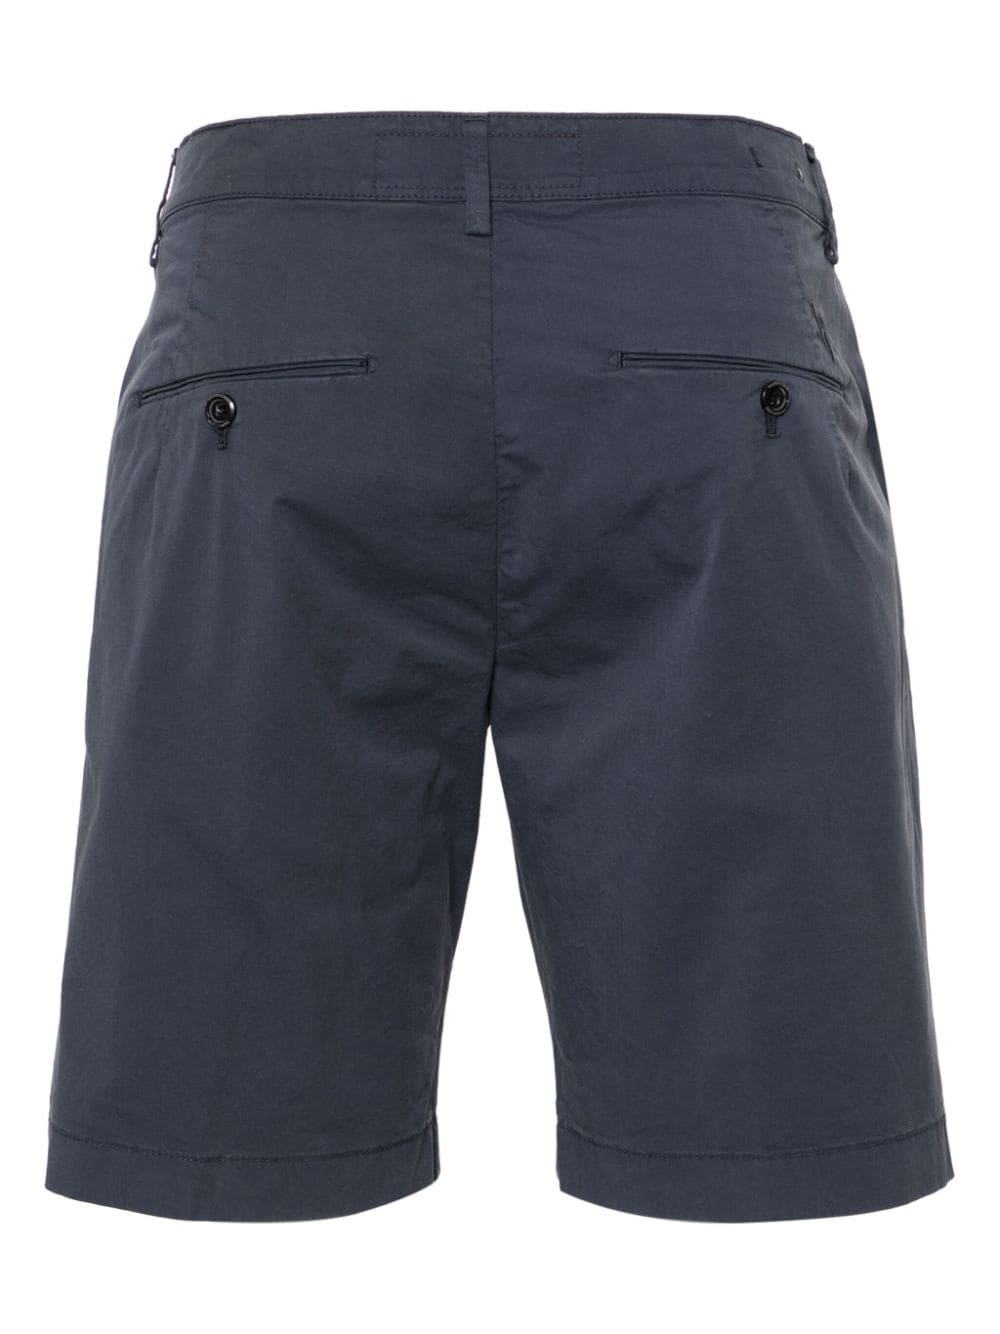 Hand Picked Venezia C cotton chino shorts - 866 BLU NAVY